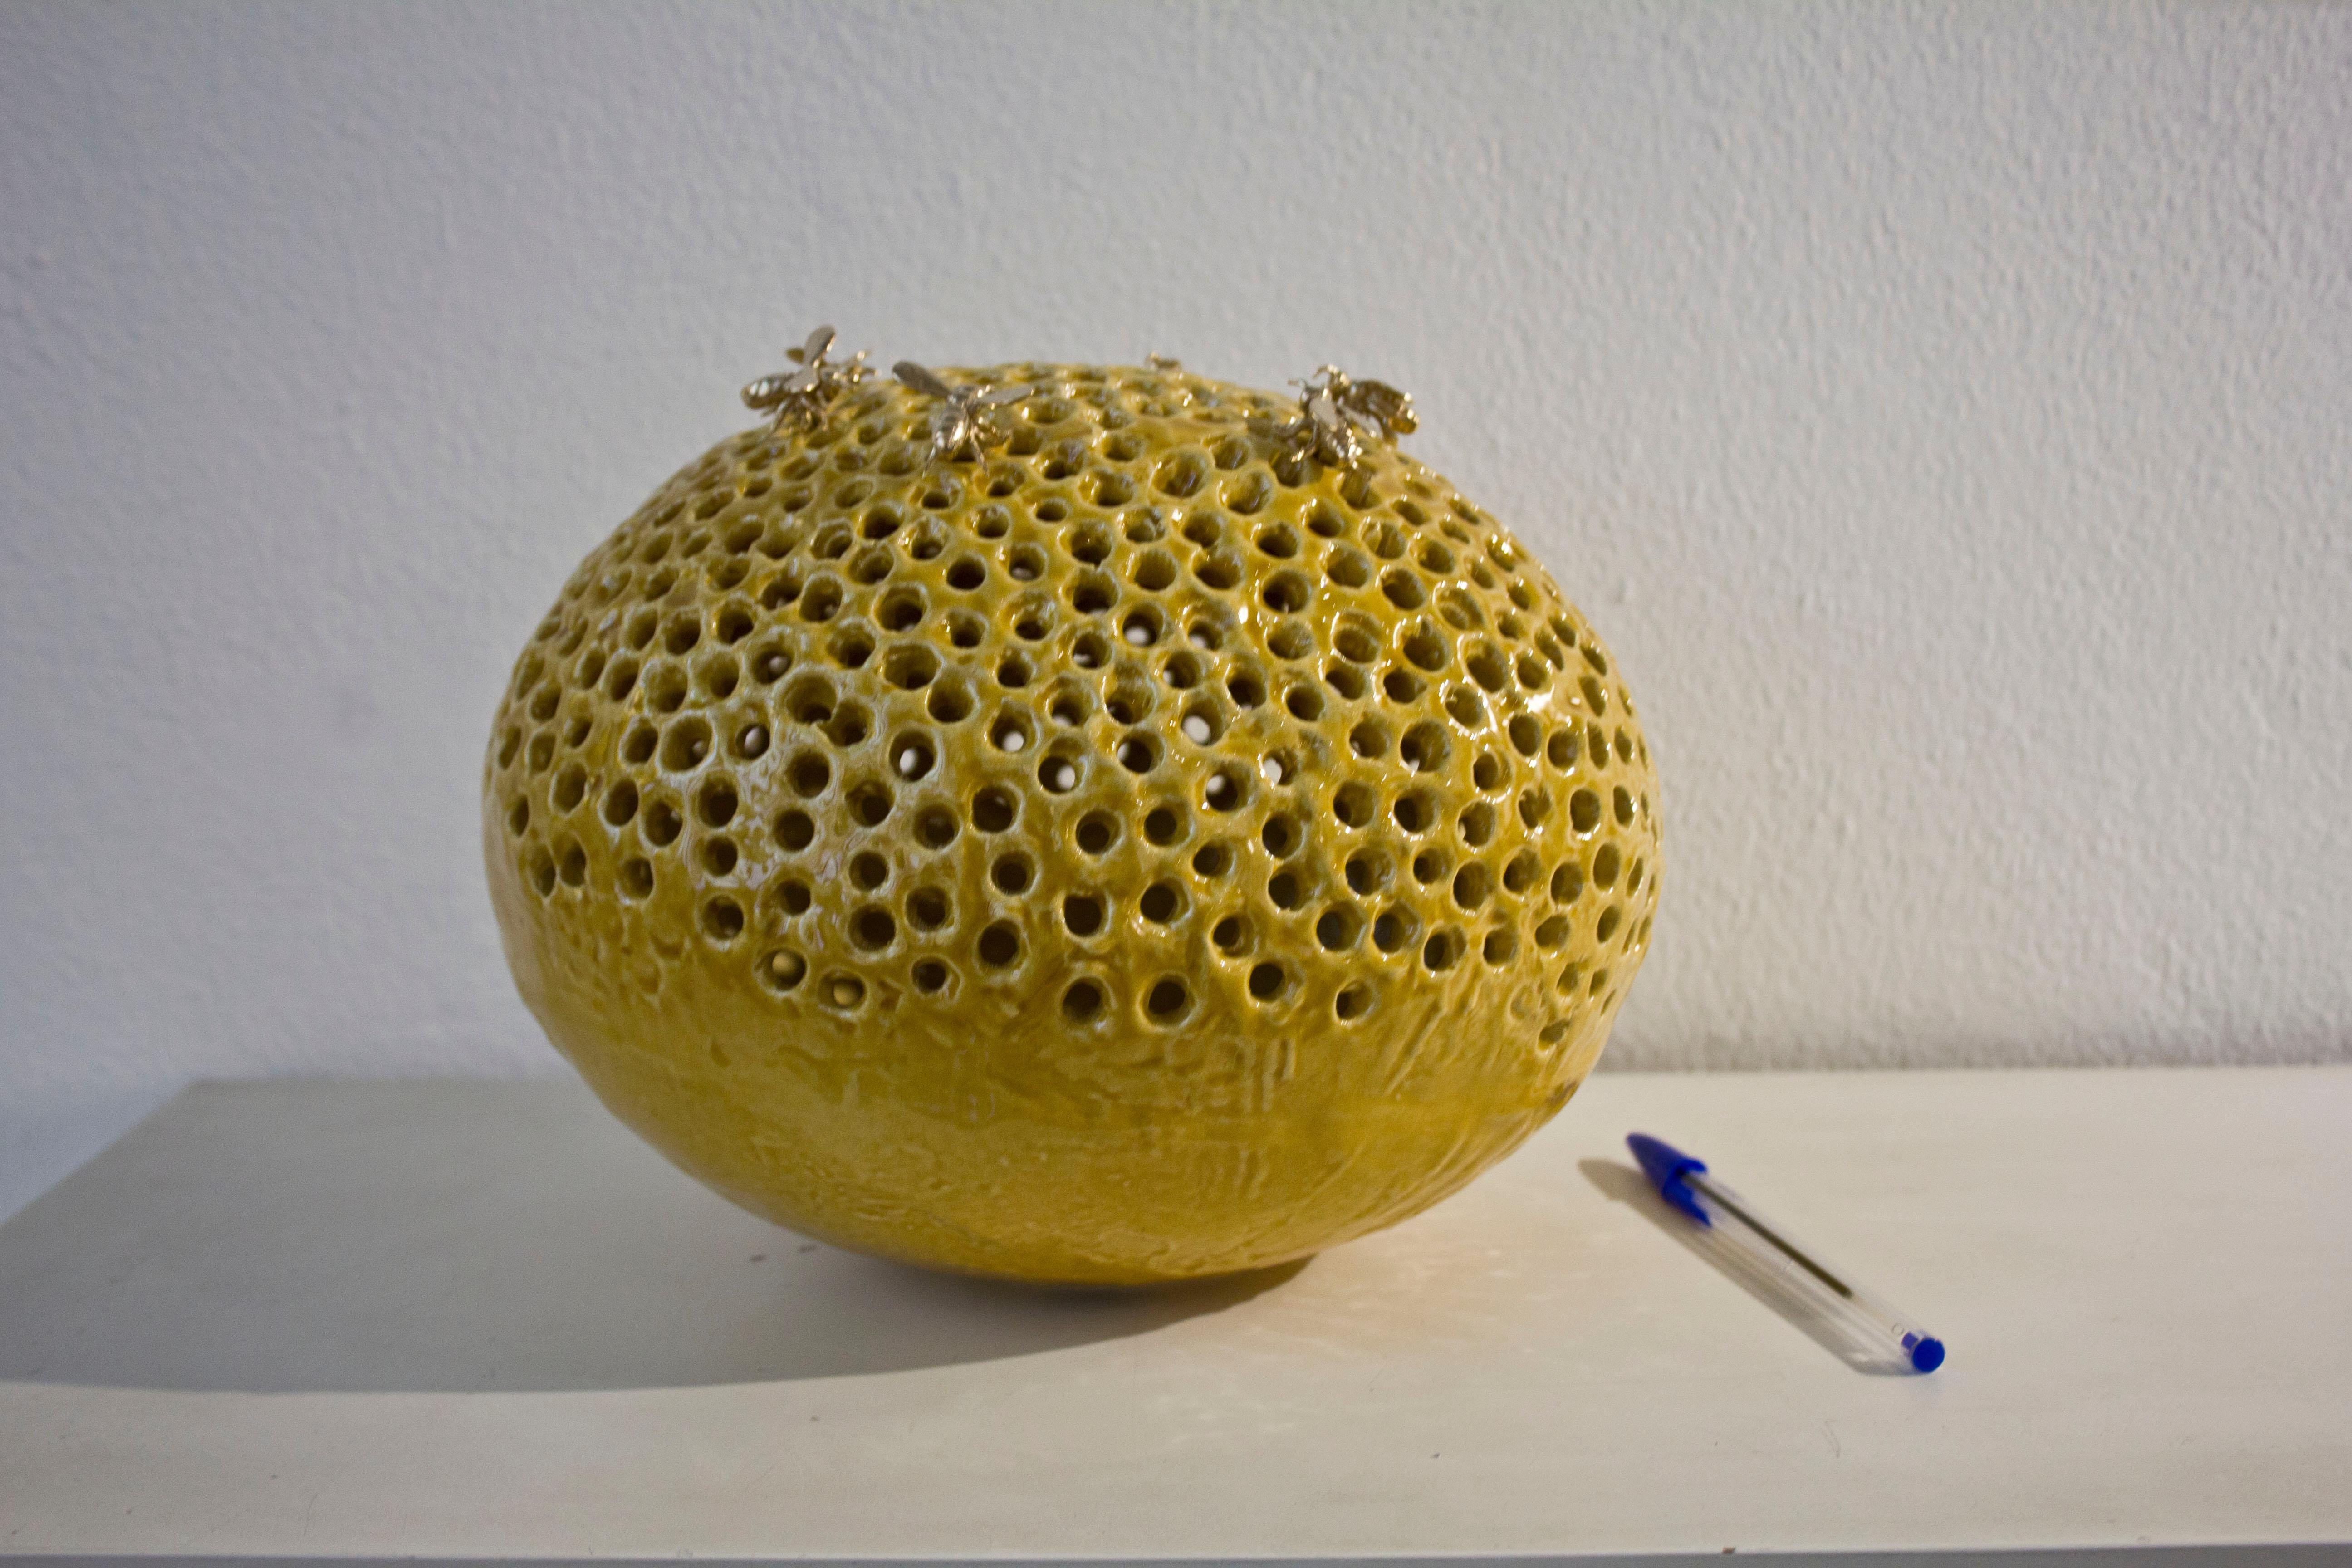 La sculpture ovale est réalisée en céramique avec une patine couleur miel difficile à produire. L'artiste a collaboré avec le meilleur four artistique d'Italie, Gatti. 

La sculpture est complétée par six abeilles en bronze amovibles. Une œuvre